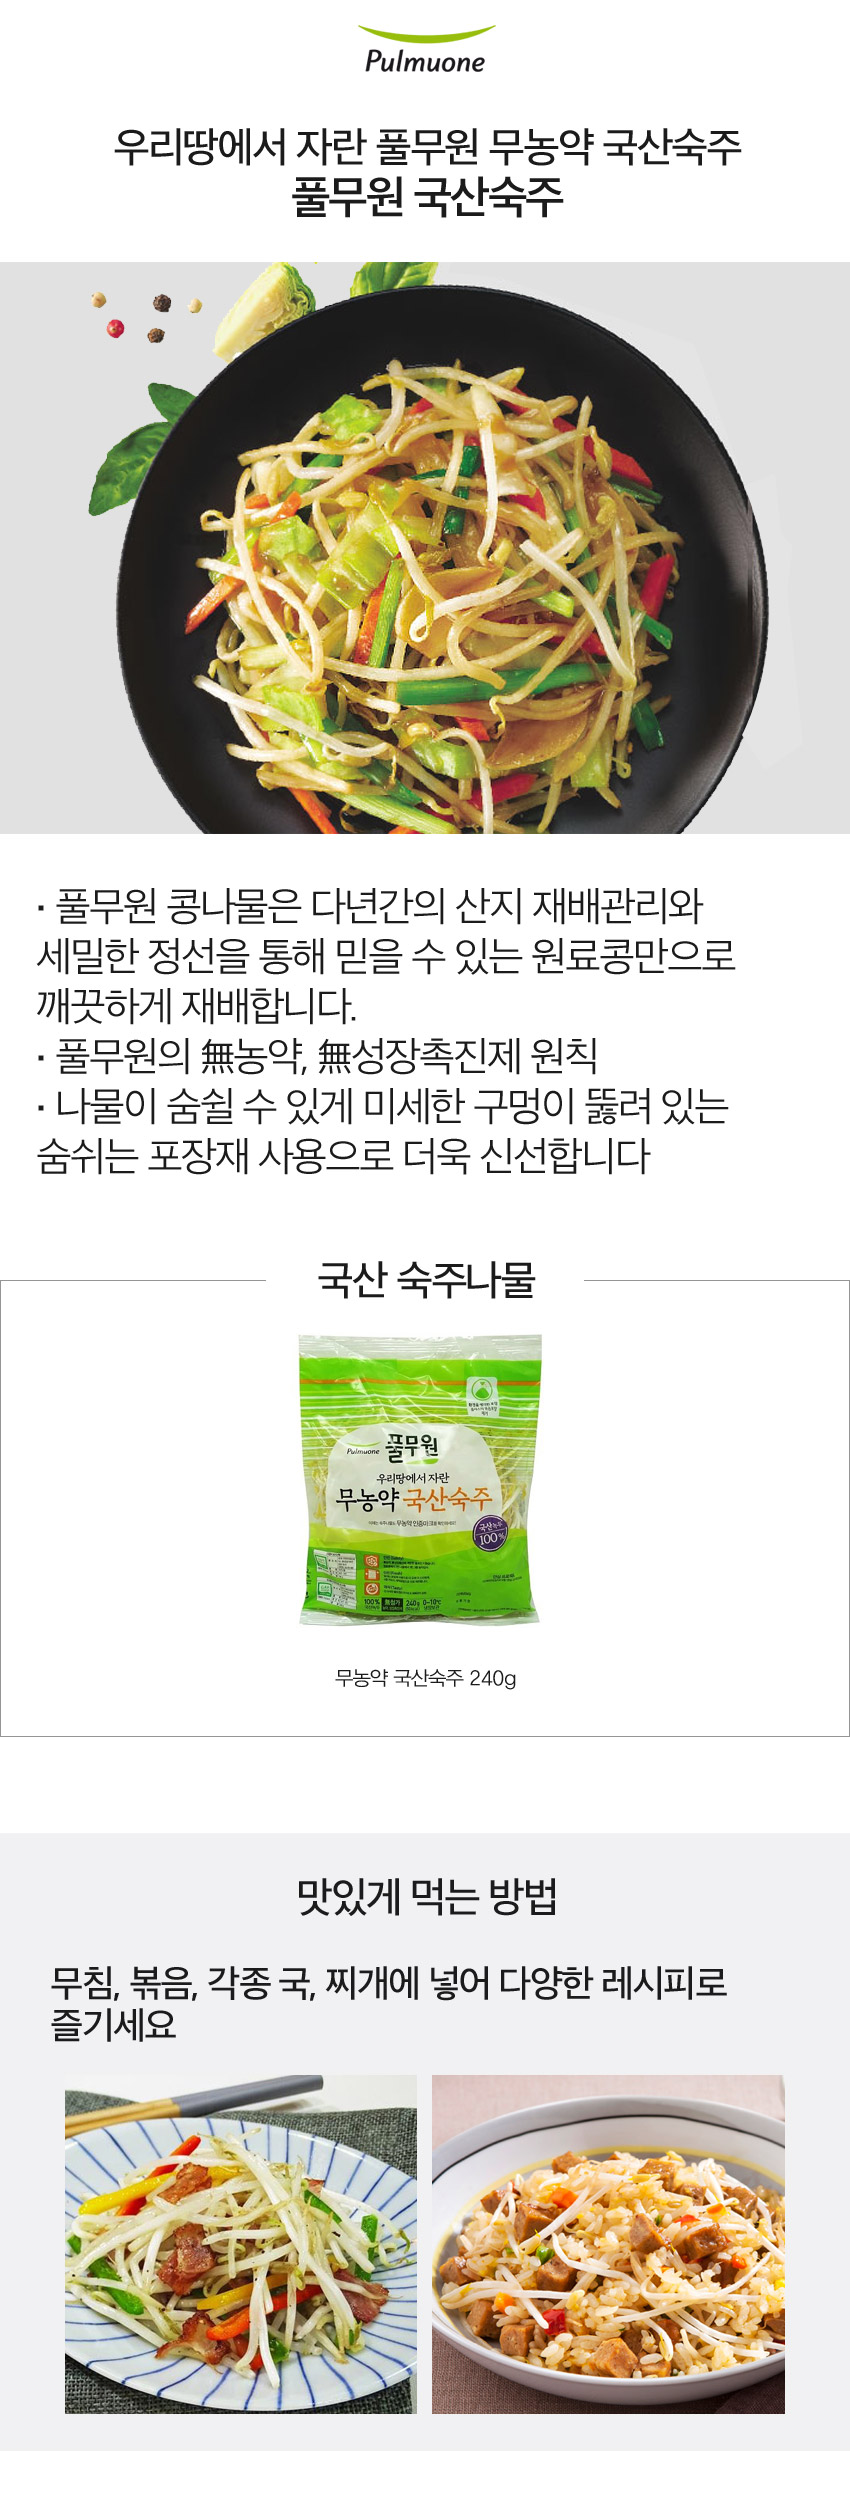 韓國食品-[풀무원] 숙주 240g